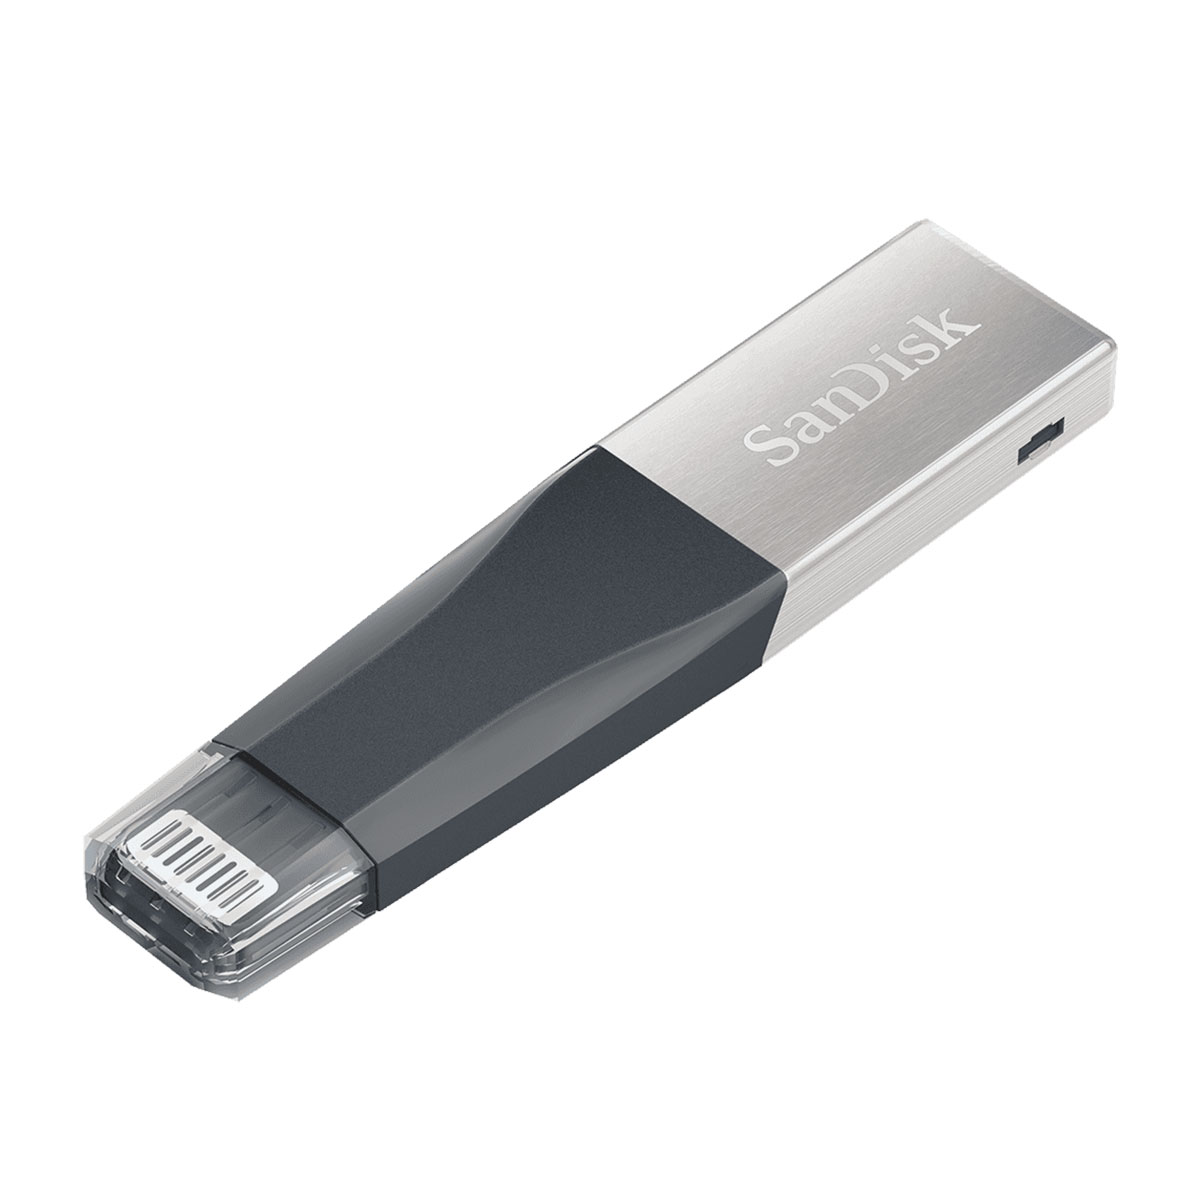 SanDisk - iXpand Mini Flash Drive 32GB